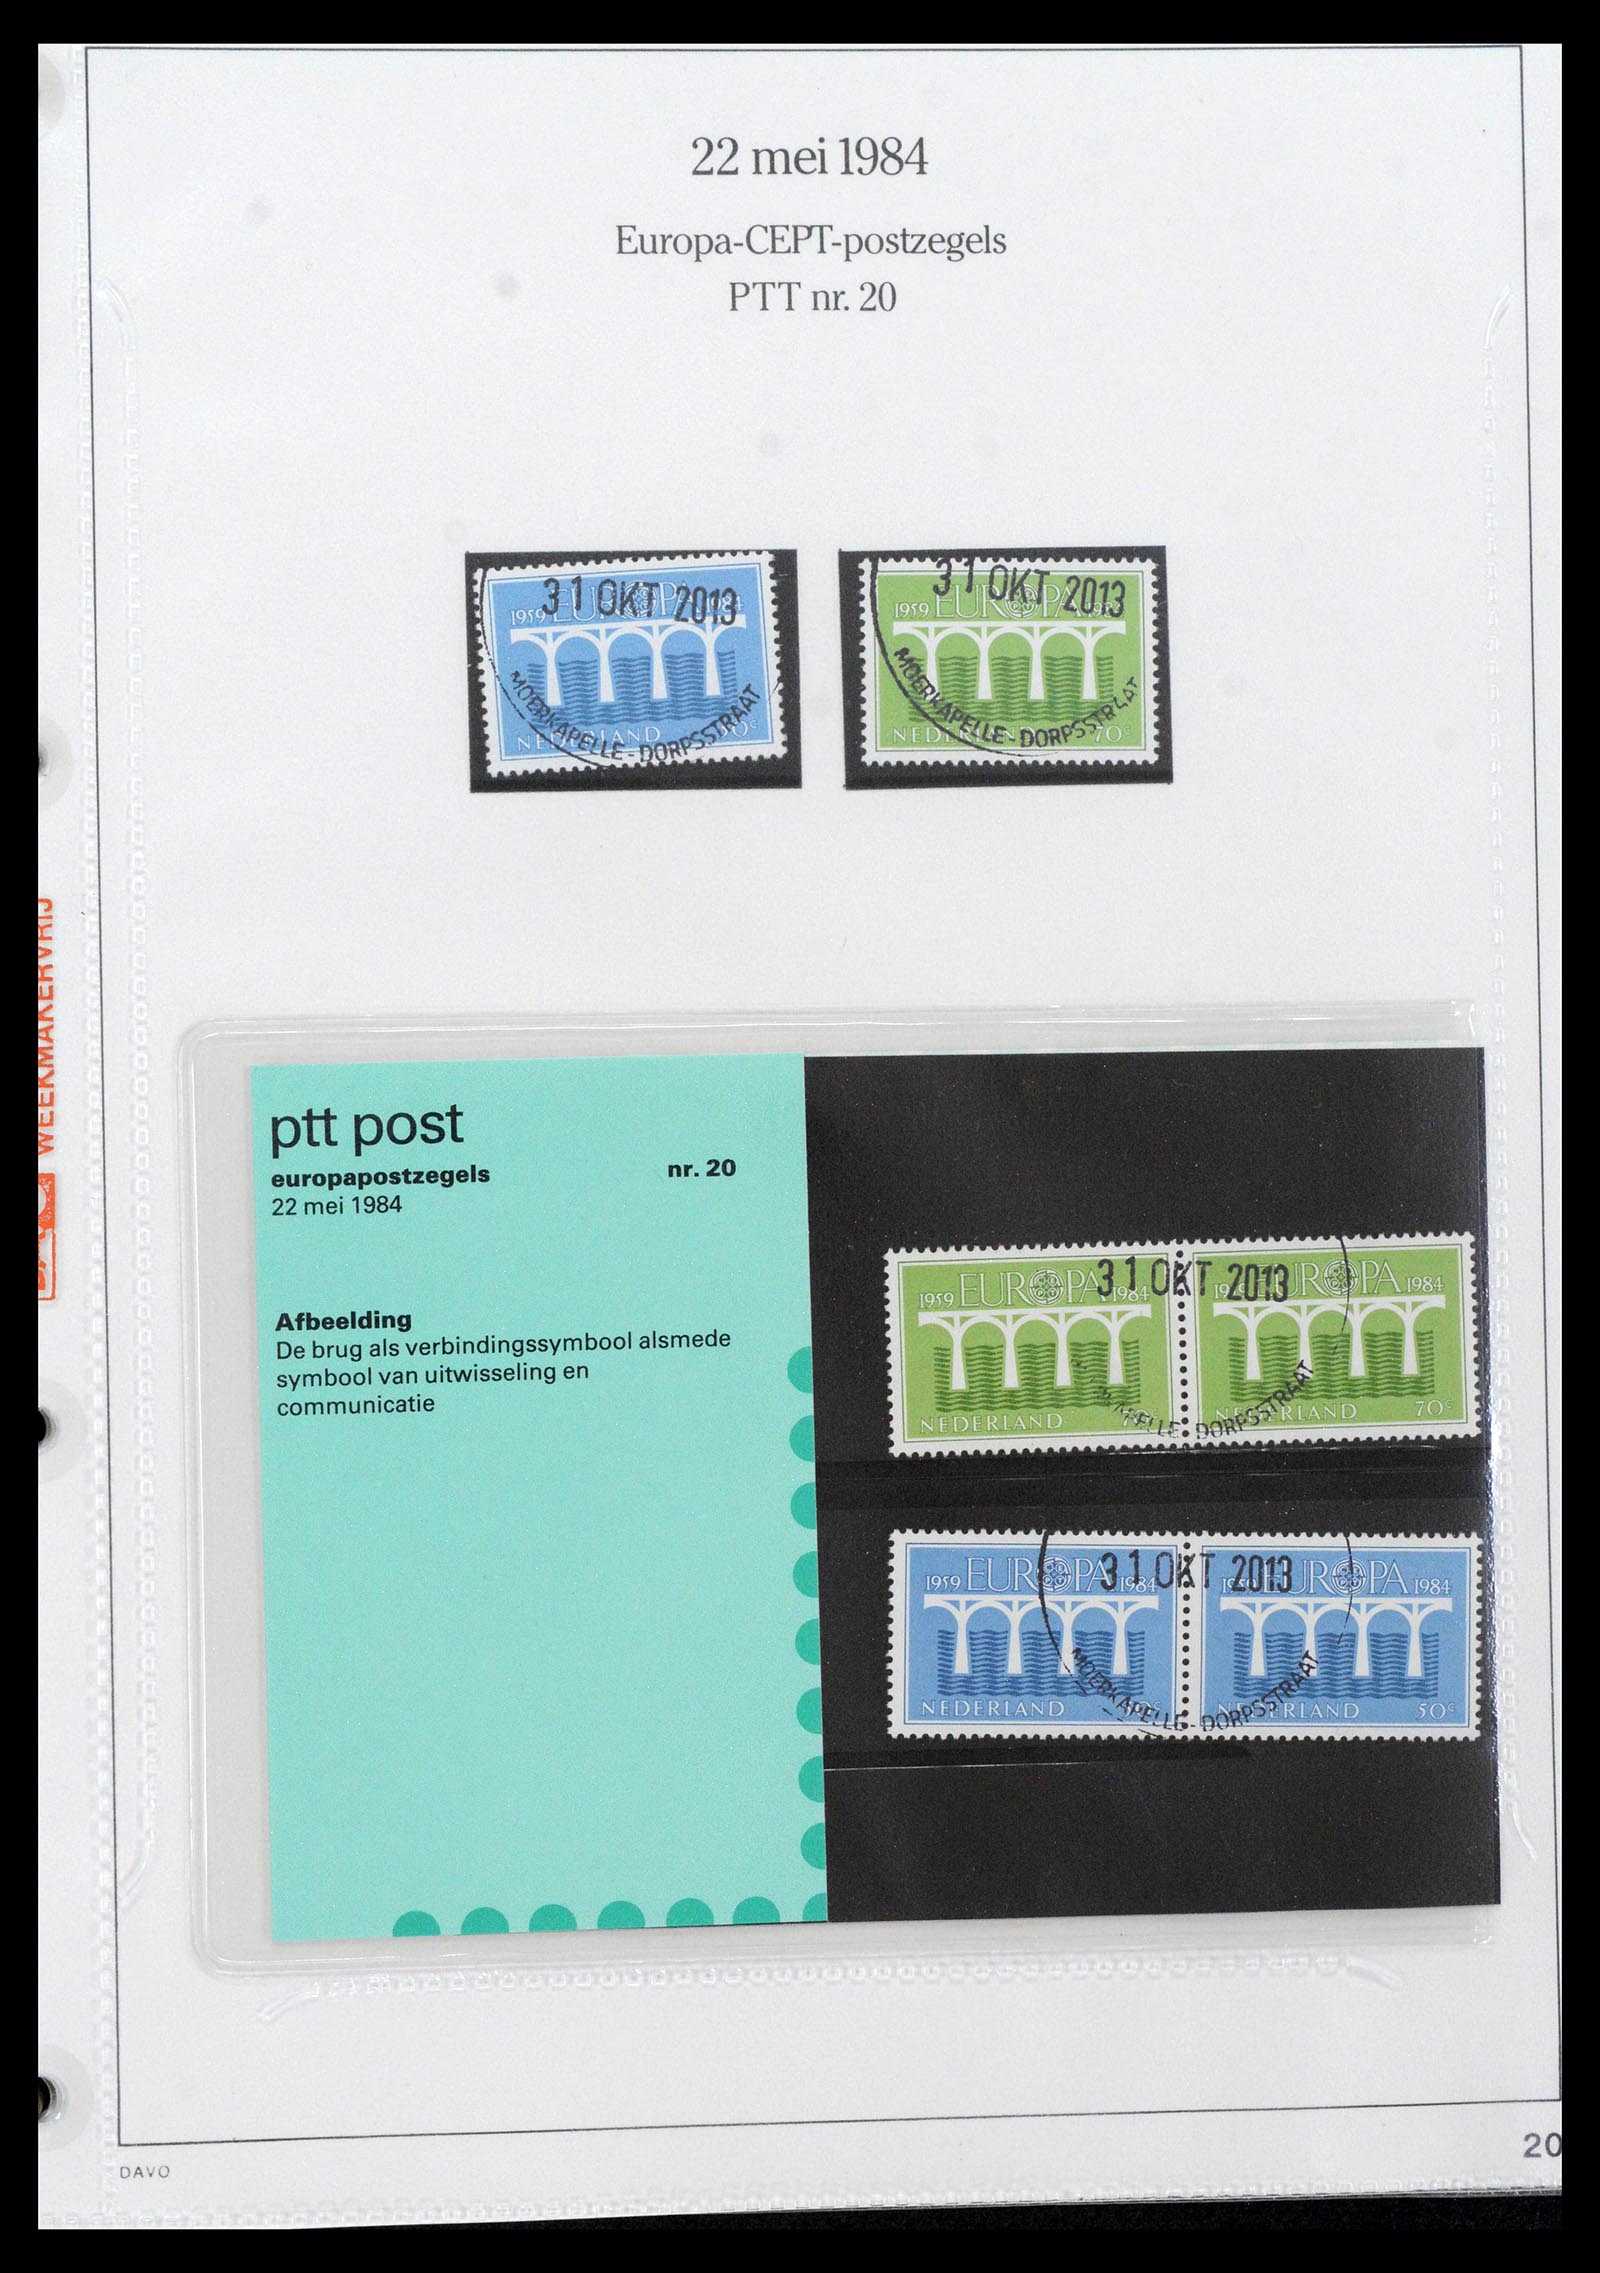 39121 0020 - Stamp collection 39121 Netherlands presentationpacks 1982-2001.